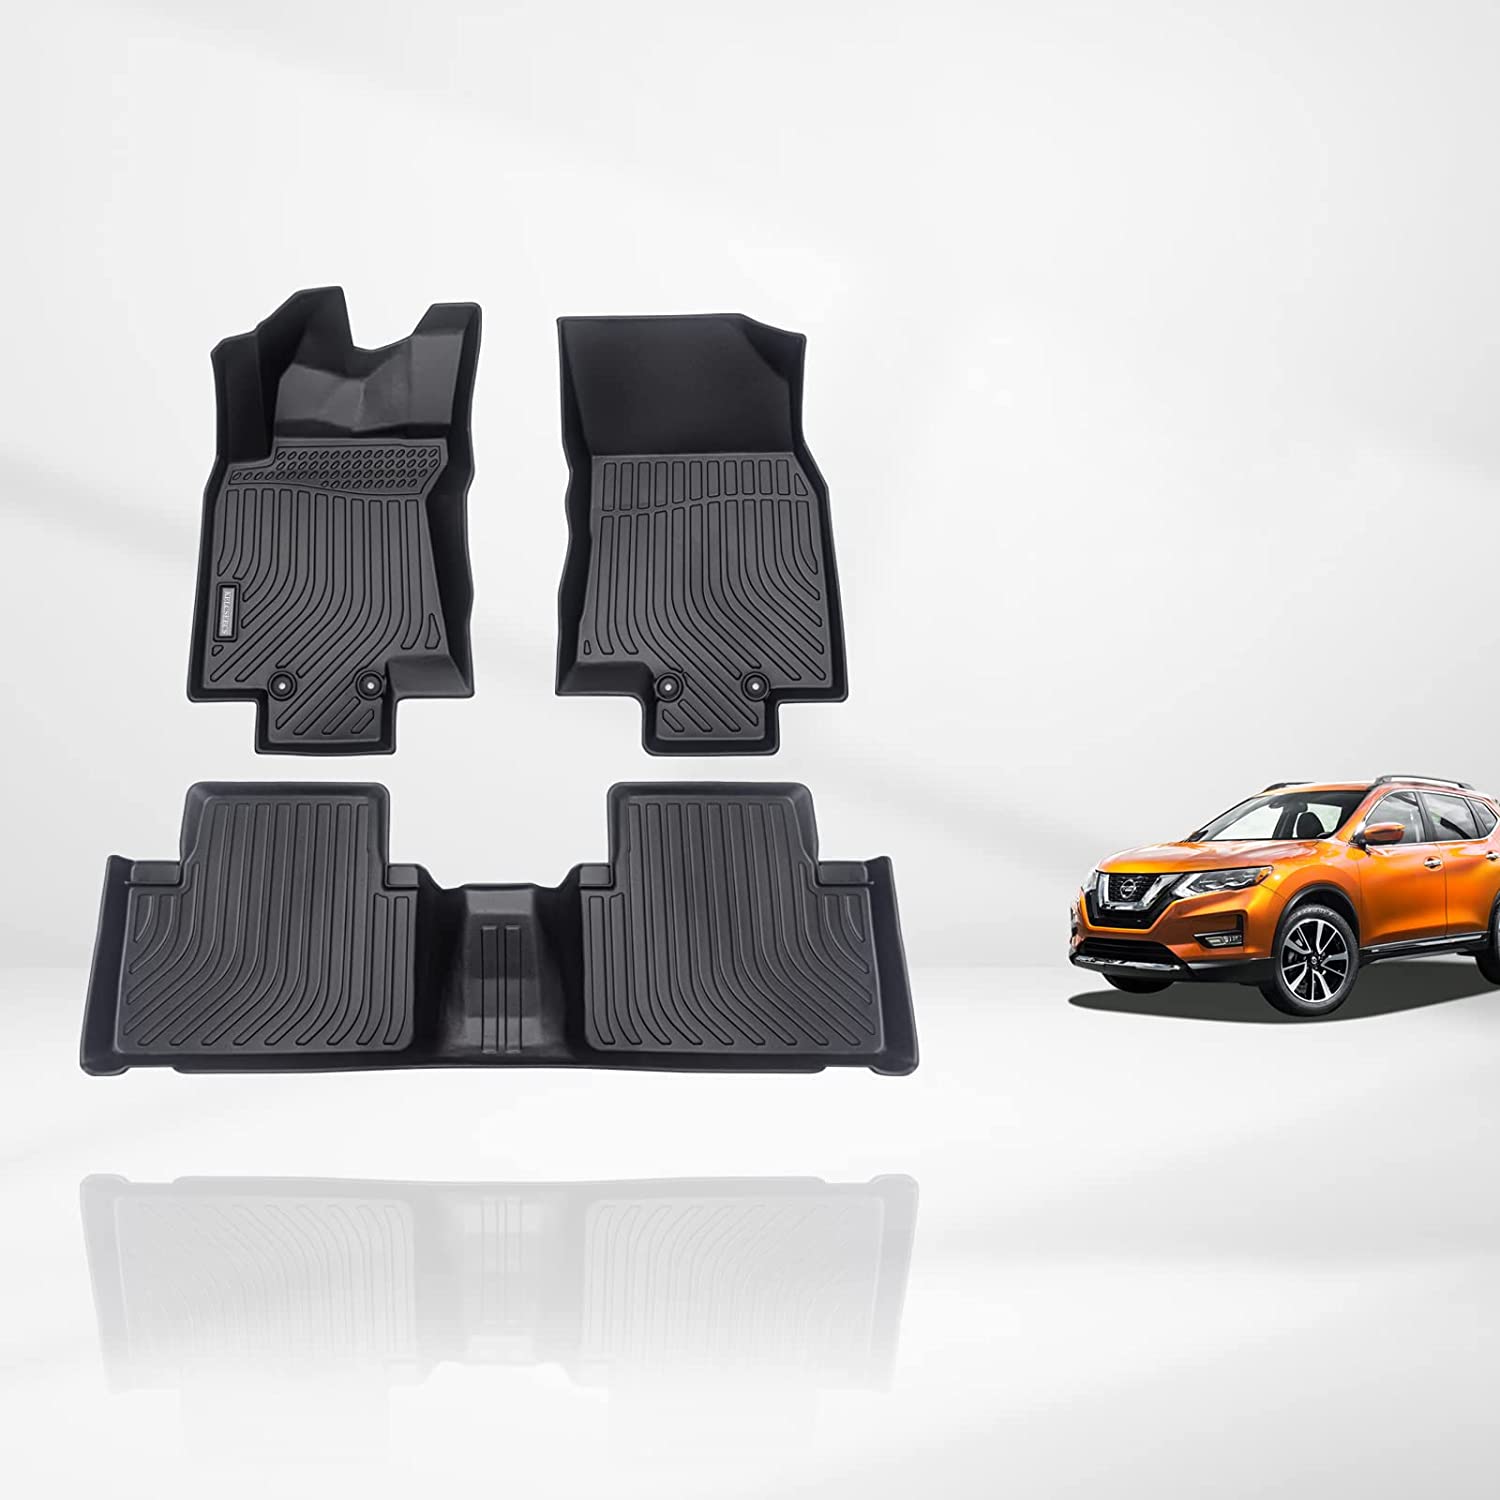 Kelcseecs All Weather 3D Tech Design TPE Car Floor Mats Floor Liners For Nissan Rogue 2014-2020